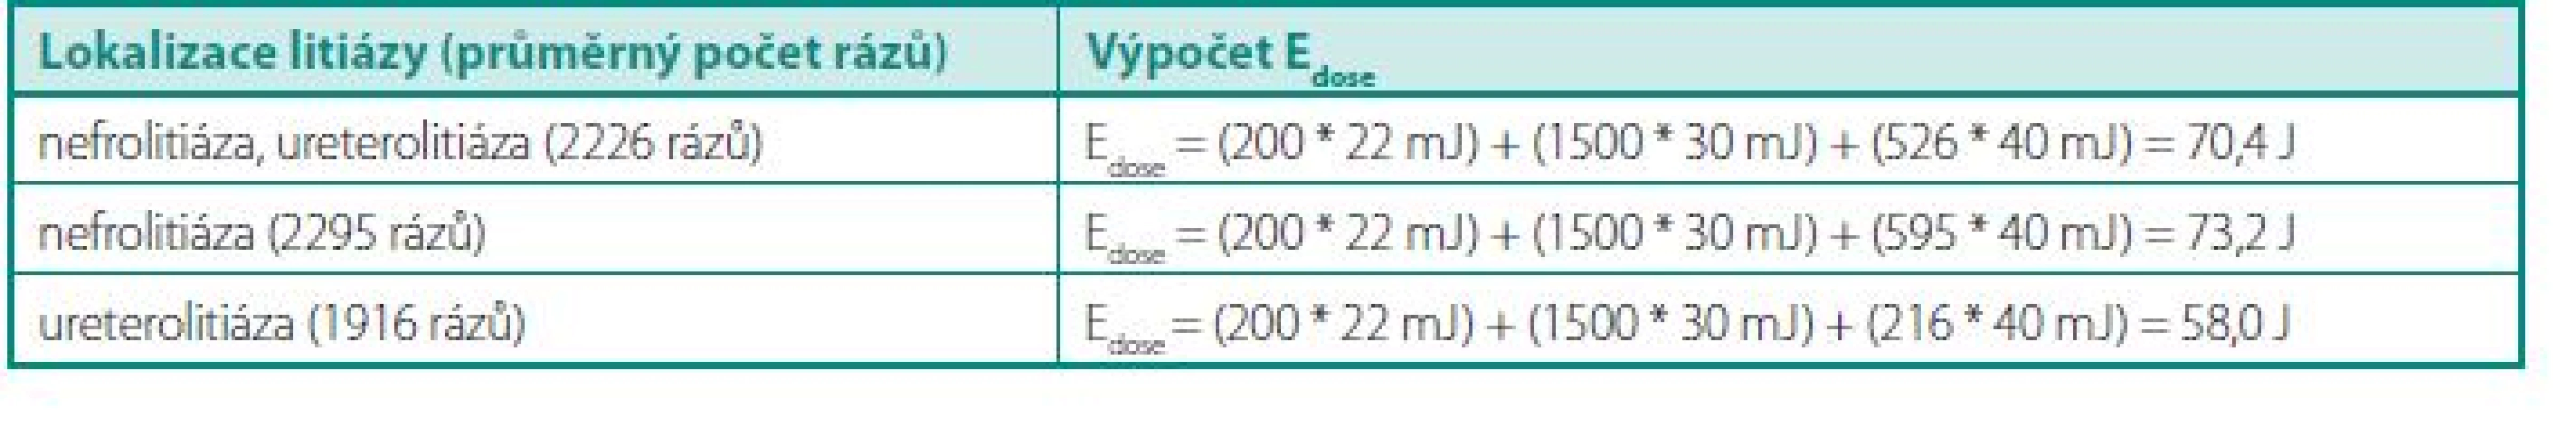 Výpočet E&lt;sub&gt;dose&lt;/sub&gt;
Table 2. Assessment of E&lt;sub&gt;dose&lt;/sub&gt;